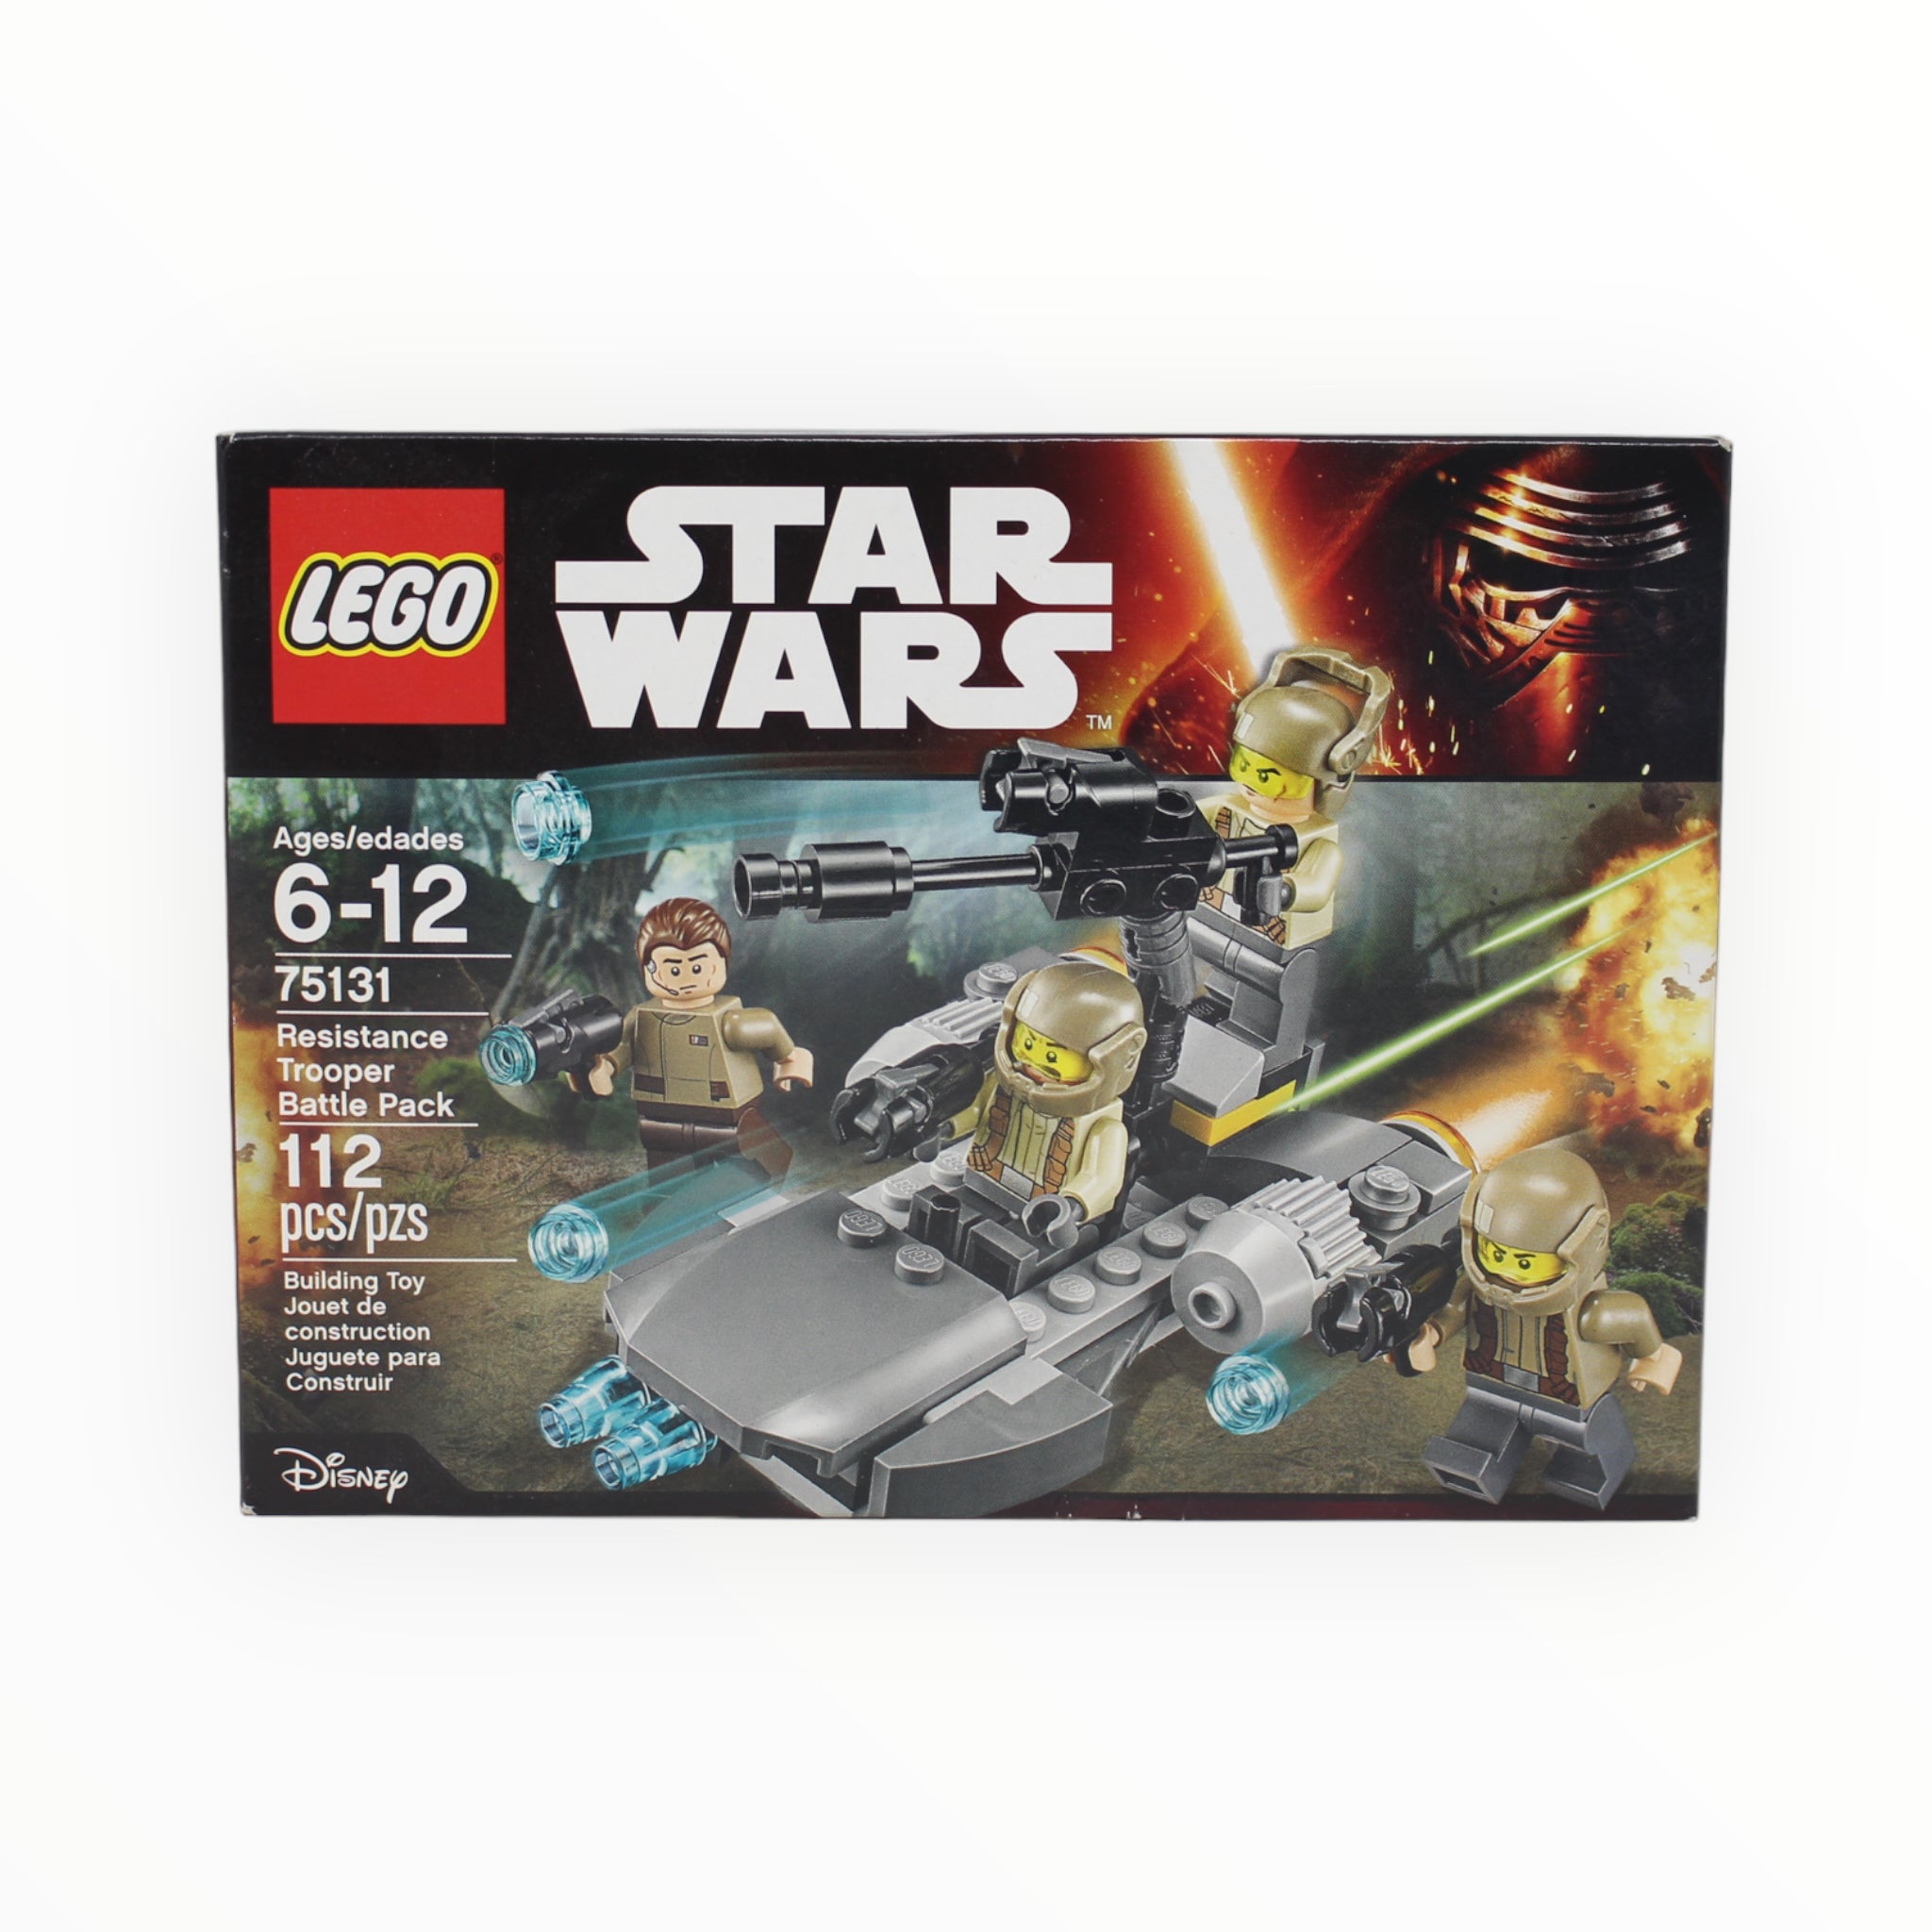 Retired Set 75131 Star Wars Resistance Trooper Battle Pack